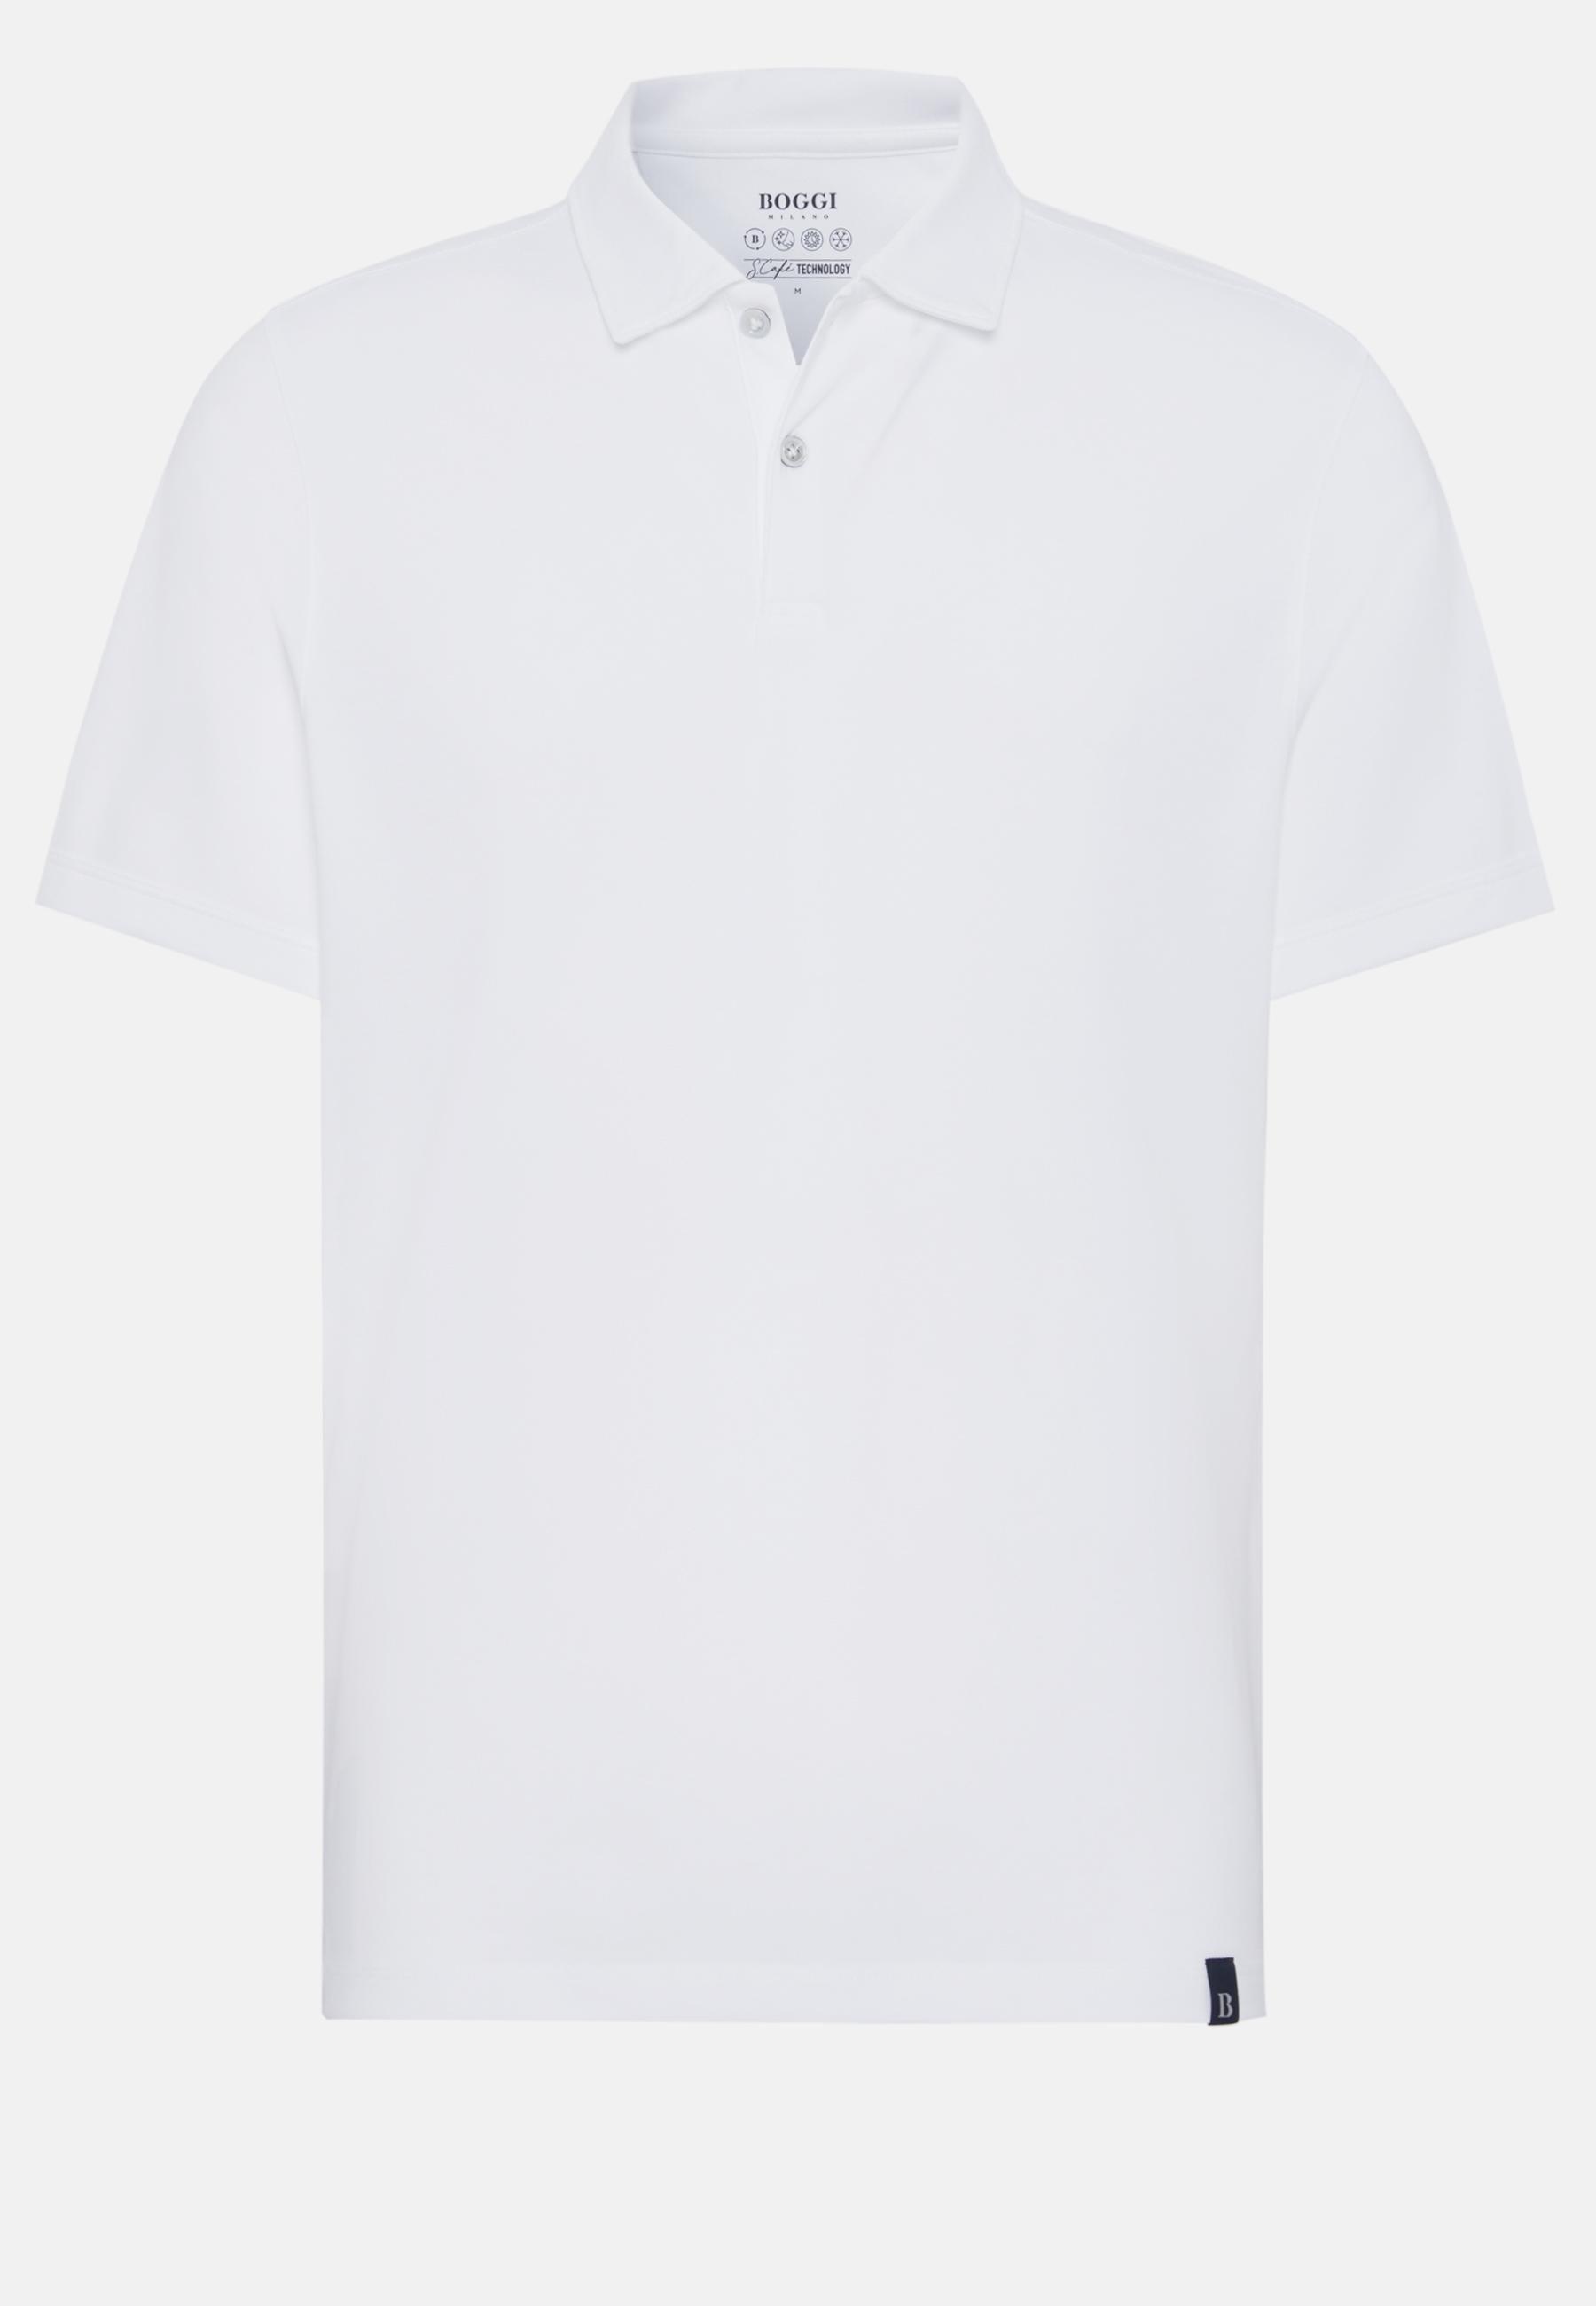 Boggi Milano - White Spring High-Performance Pique Polo Shirt